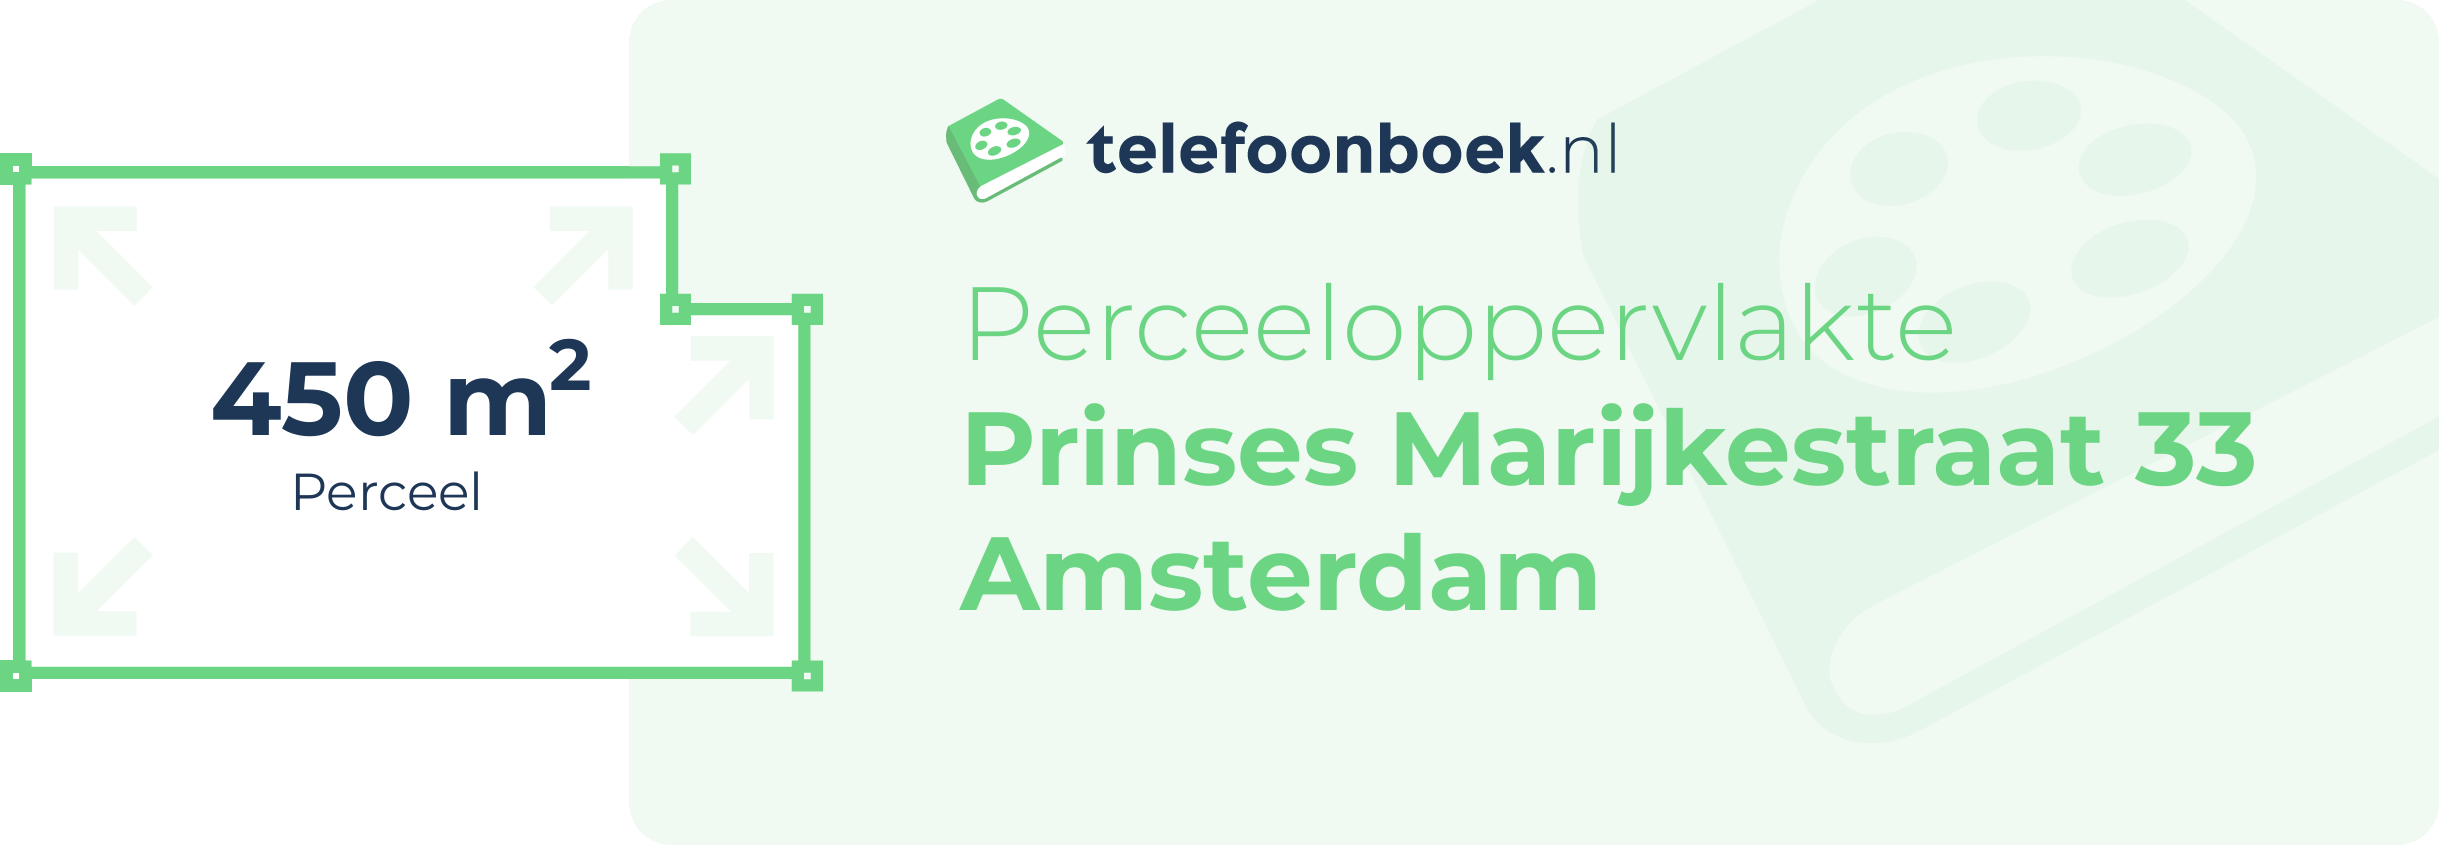 Perceeloppervlakte Prinses Marijkestraat 33 Amsterdam